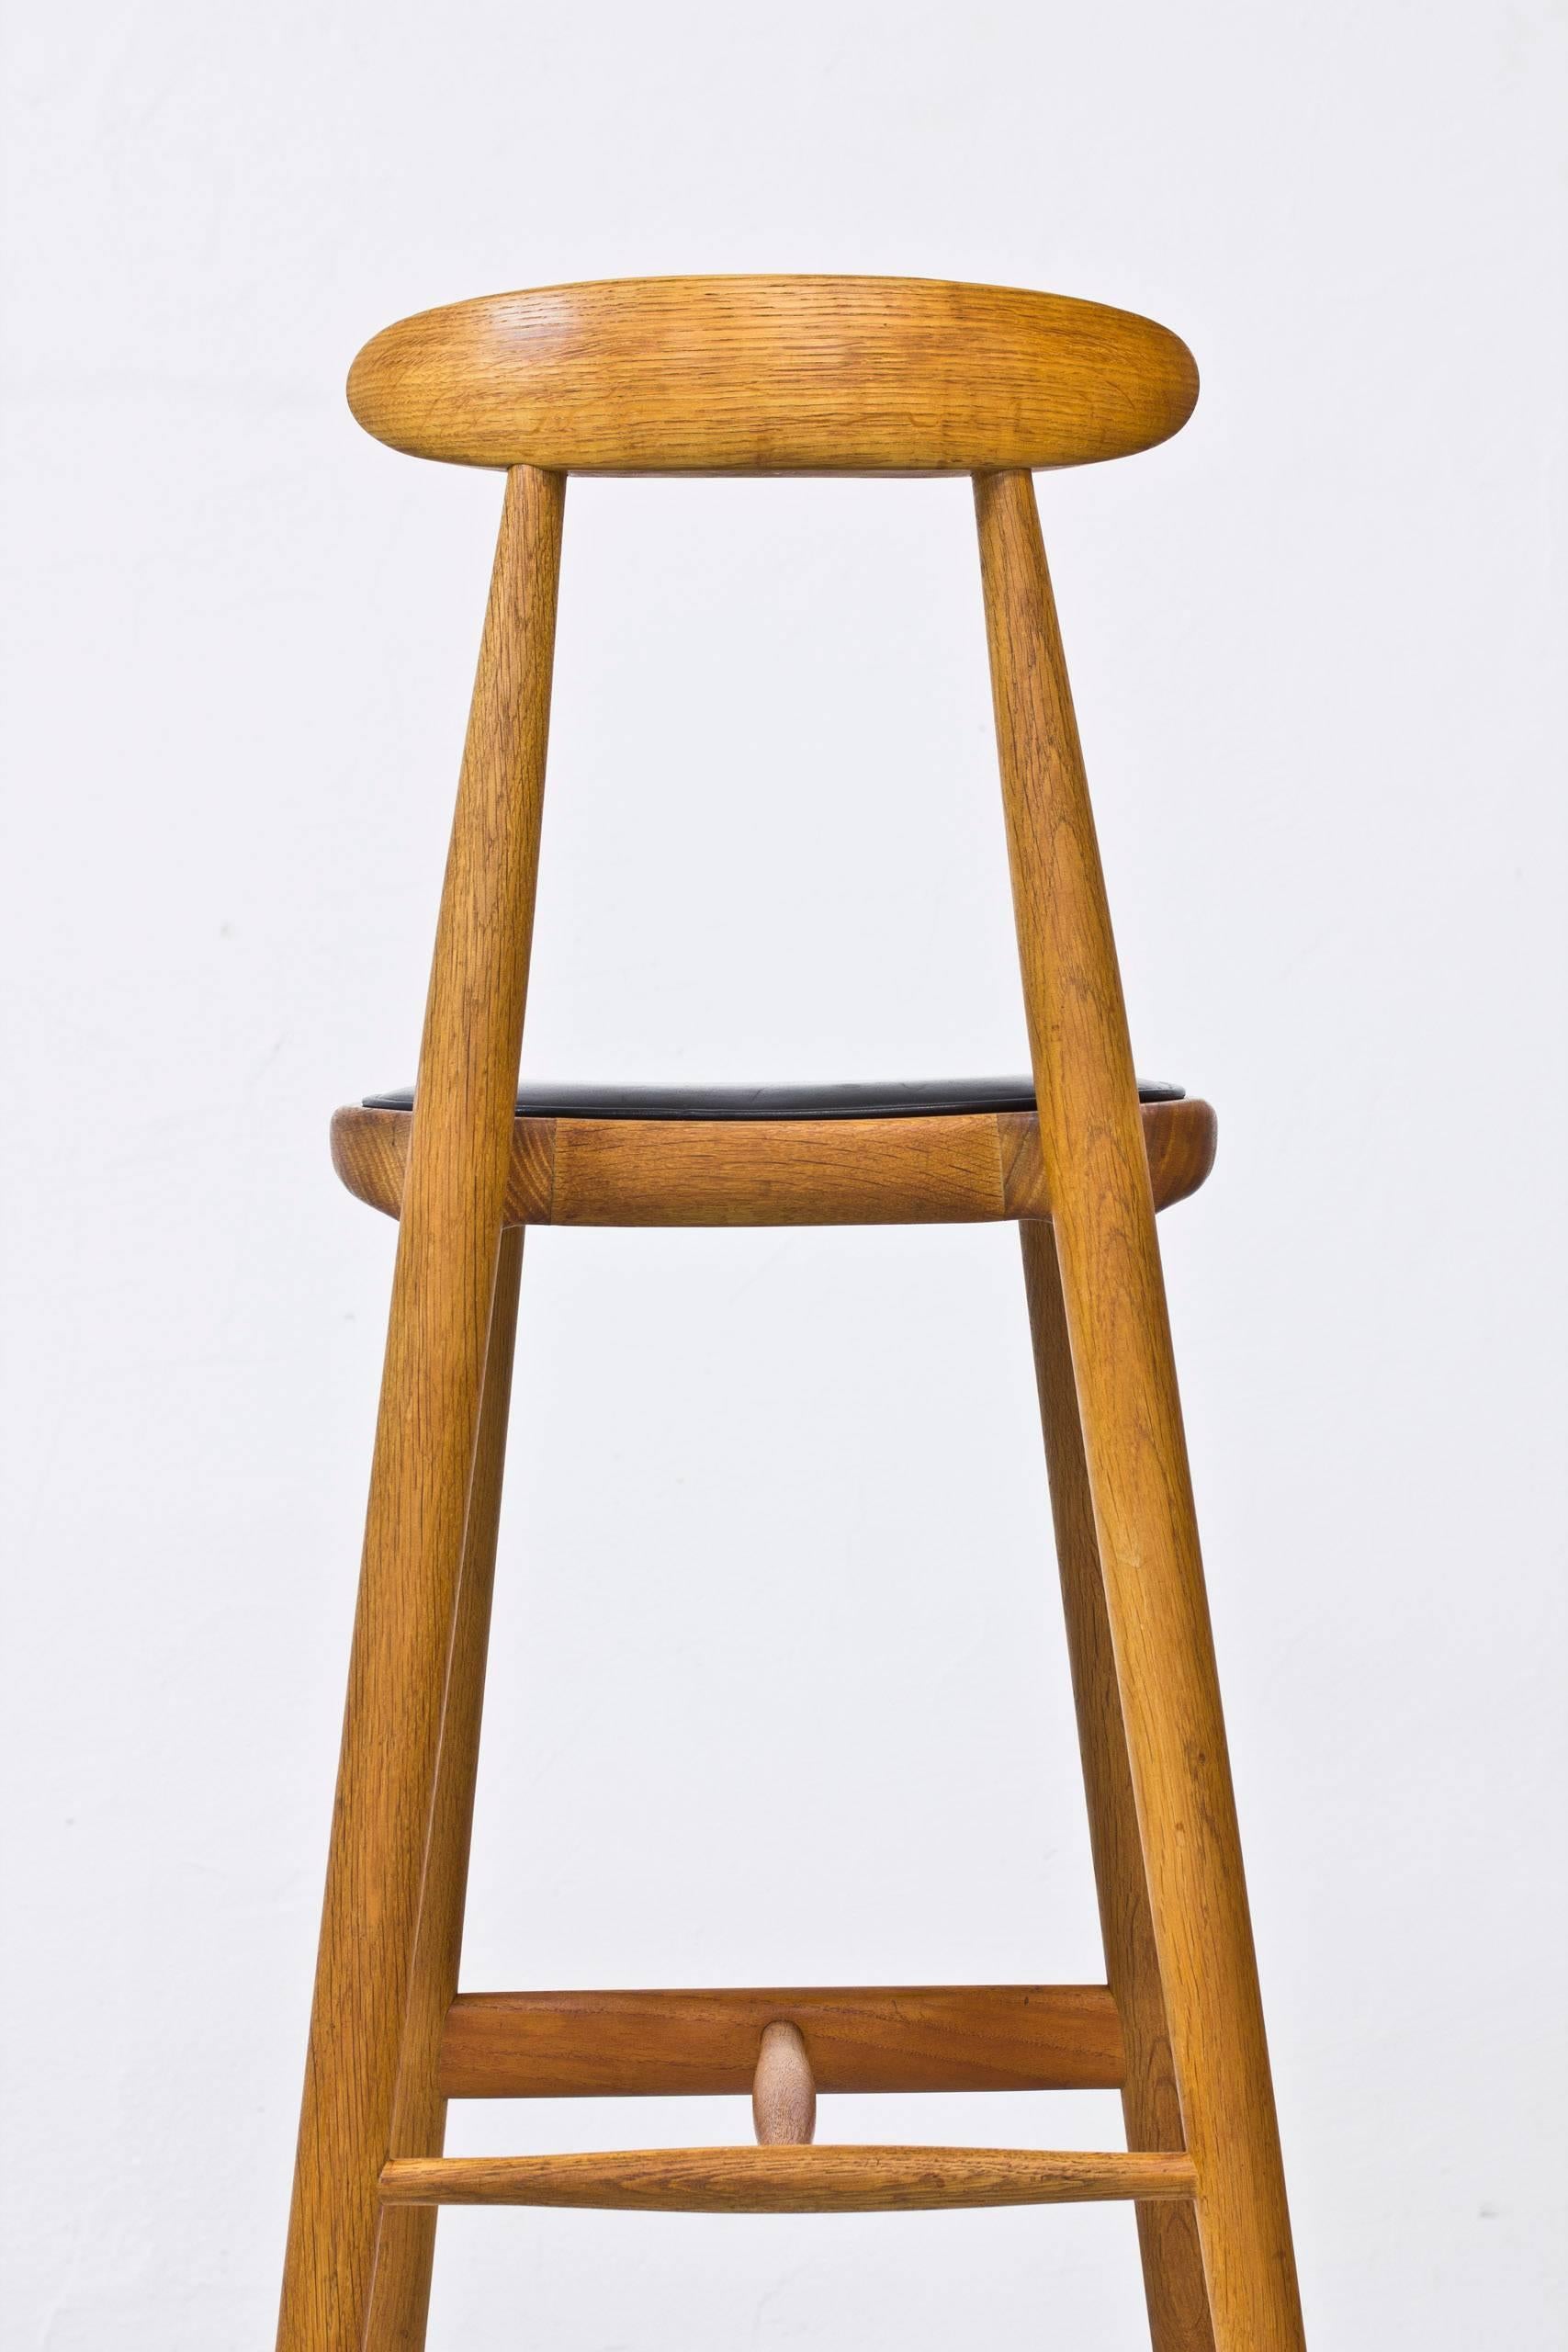 1950s kitchen stool